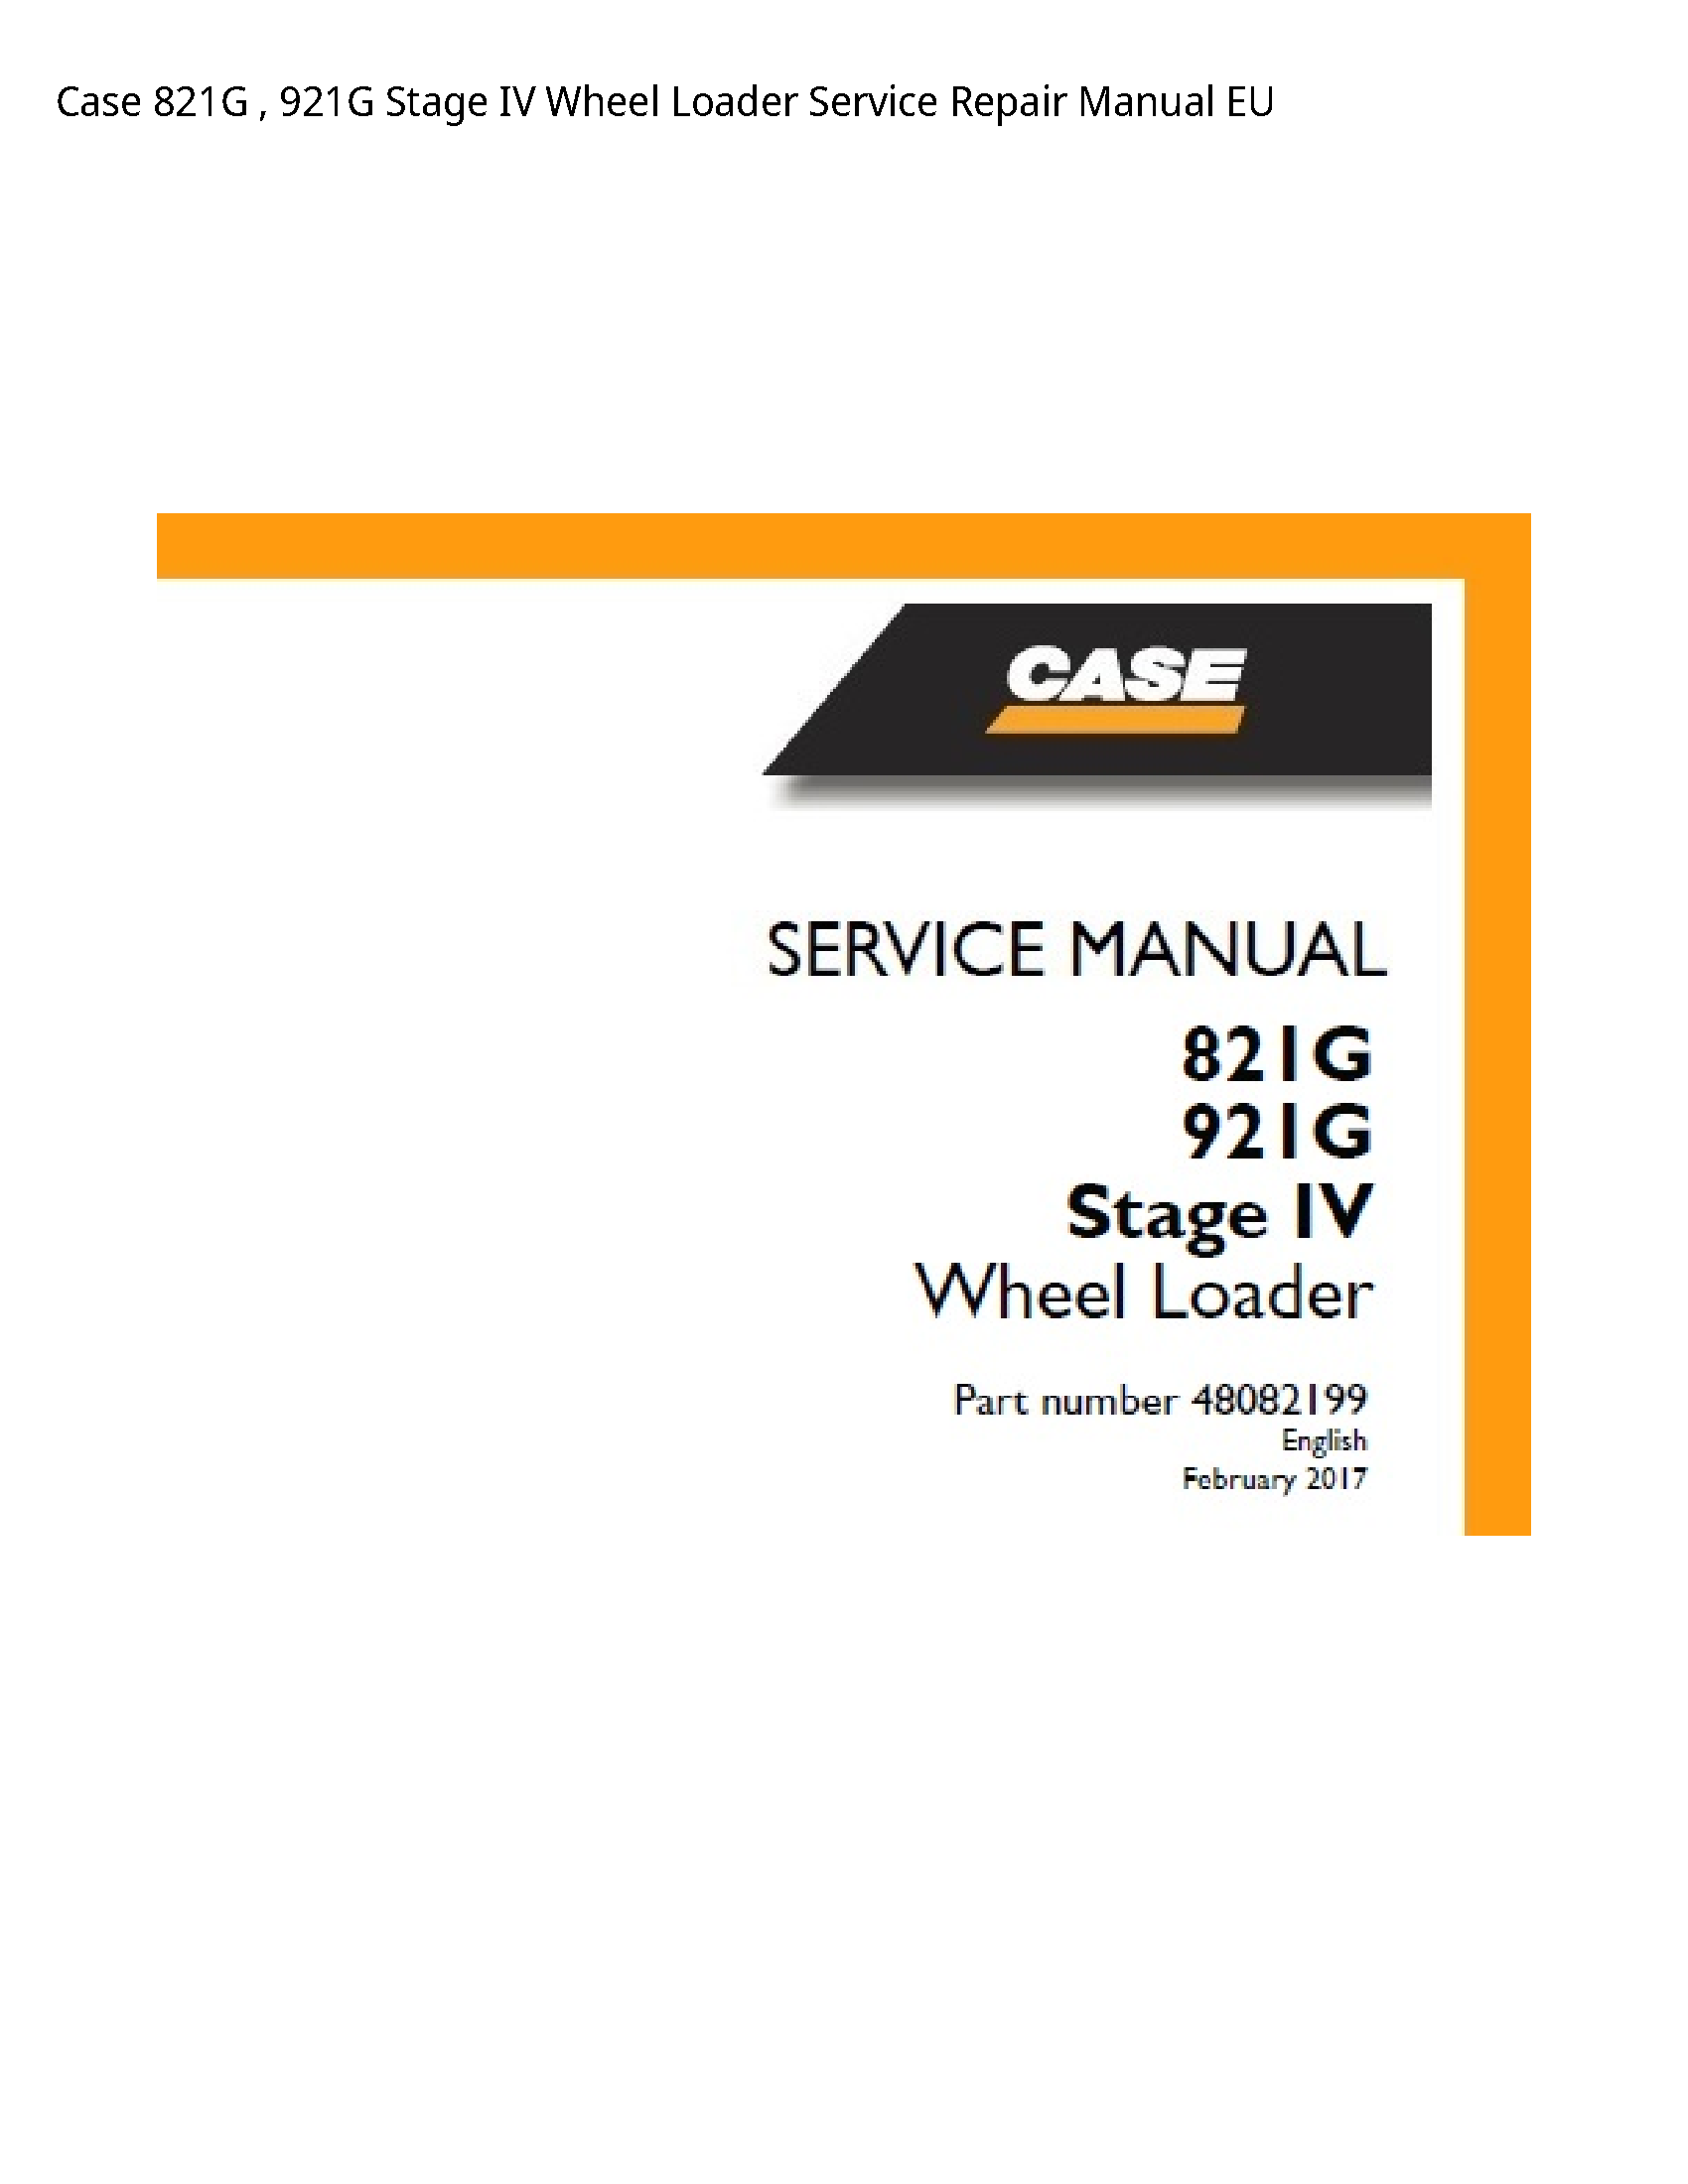 Case/Case IH 821G Stage IV Wheel Loader manual